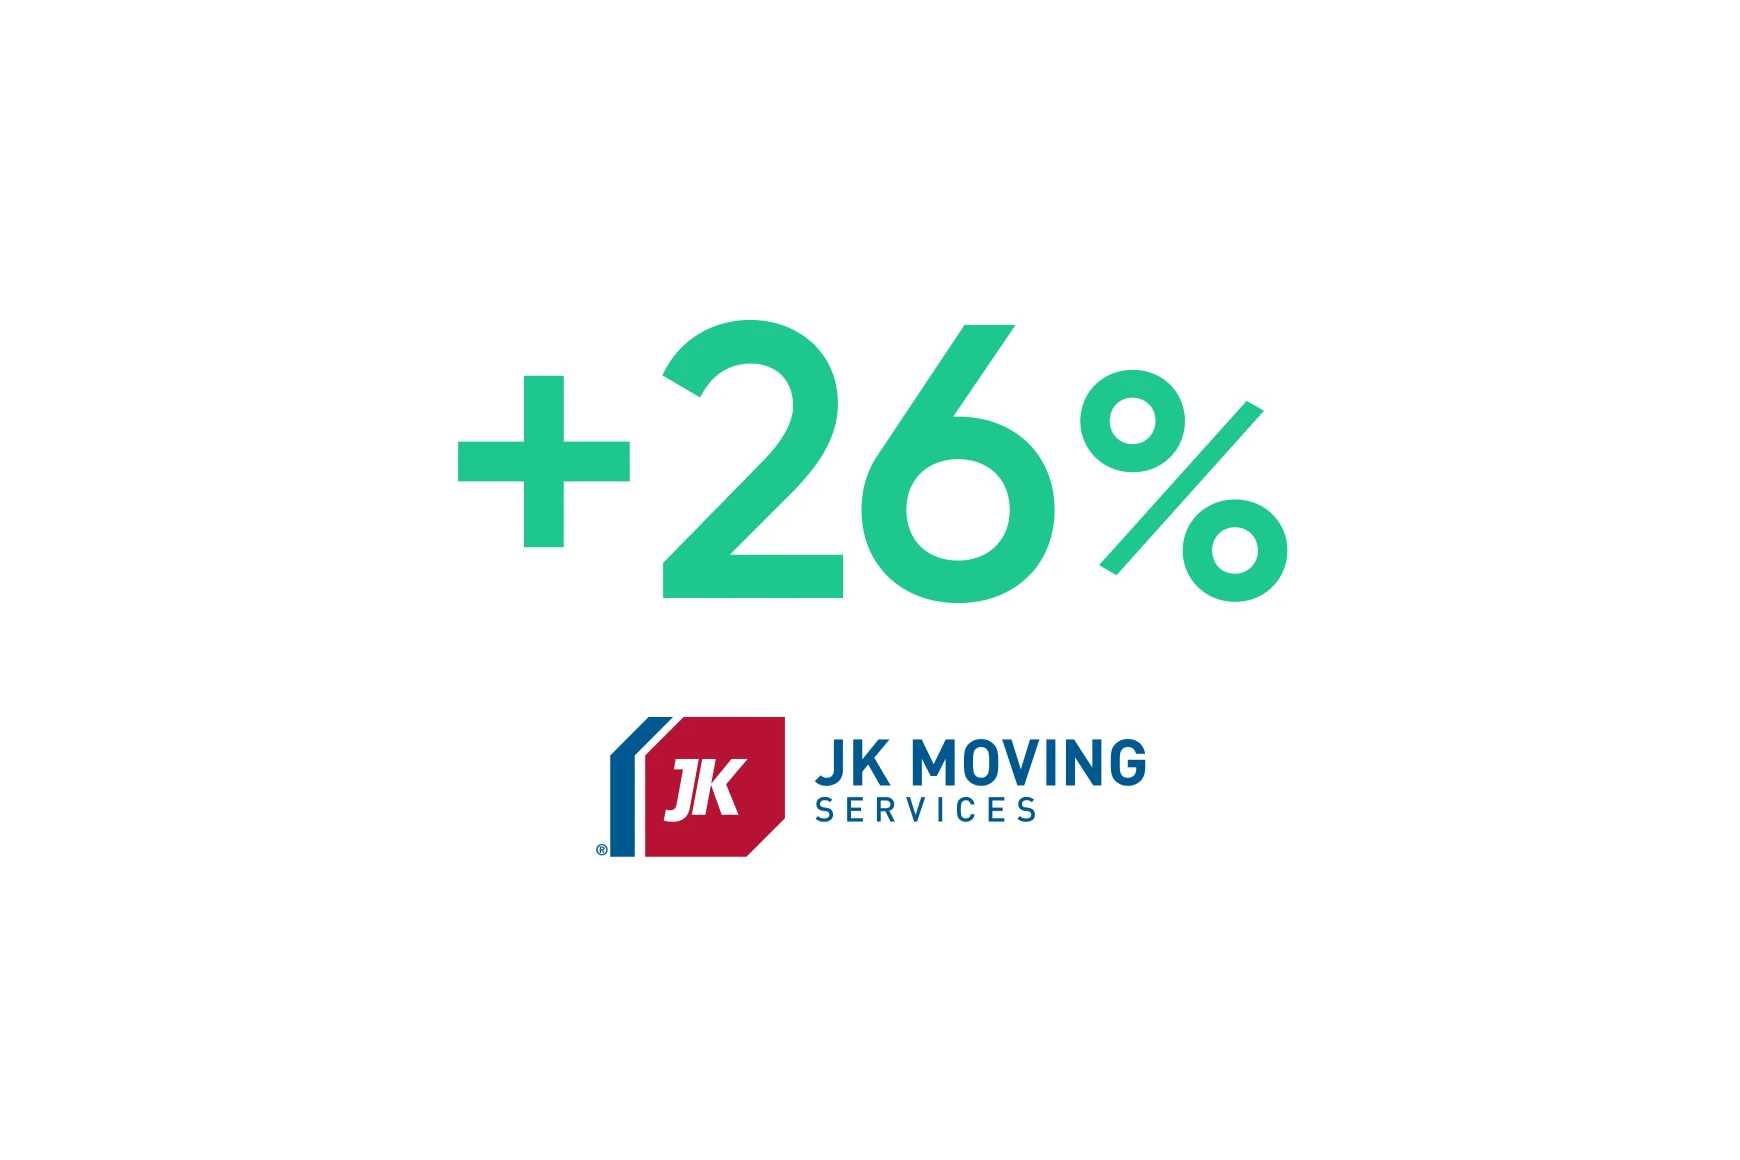 JK Moving Services: a otimização baseada em IA aumenta a conversão de vendas em 26%